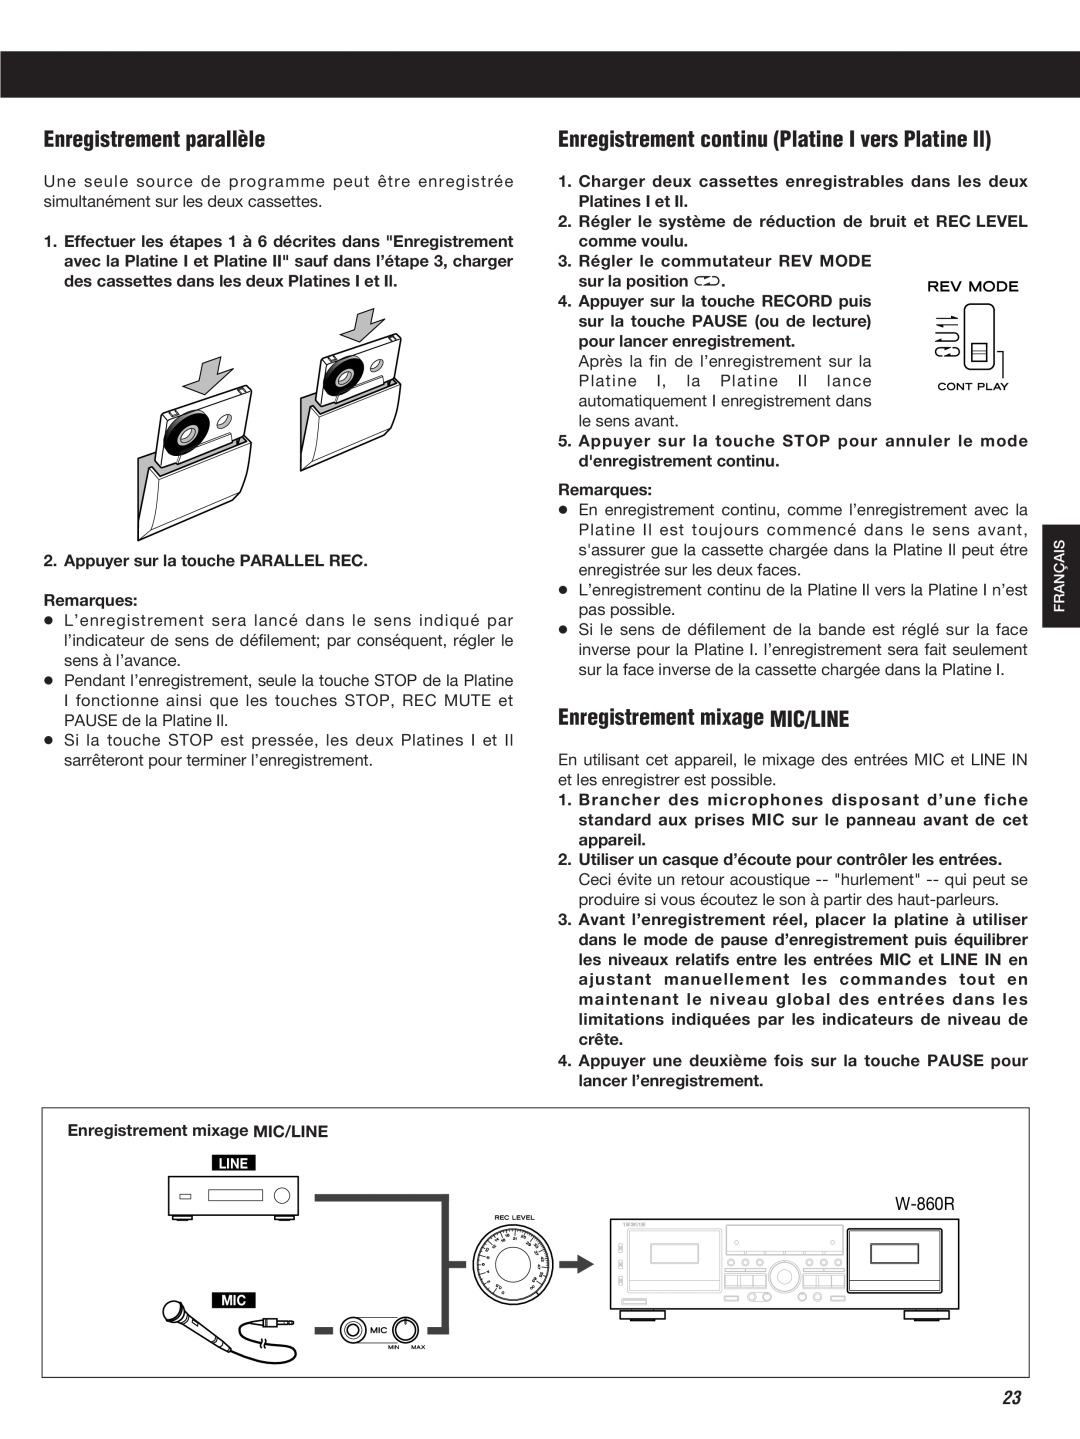 Teac W-860R Enregistrement parallèle, Enregistrement continu Platine I vers Platine Il, Enregistrement mixage MIC/LINE 